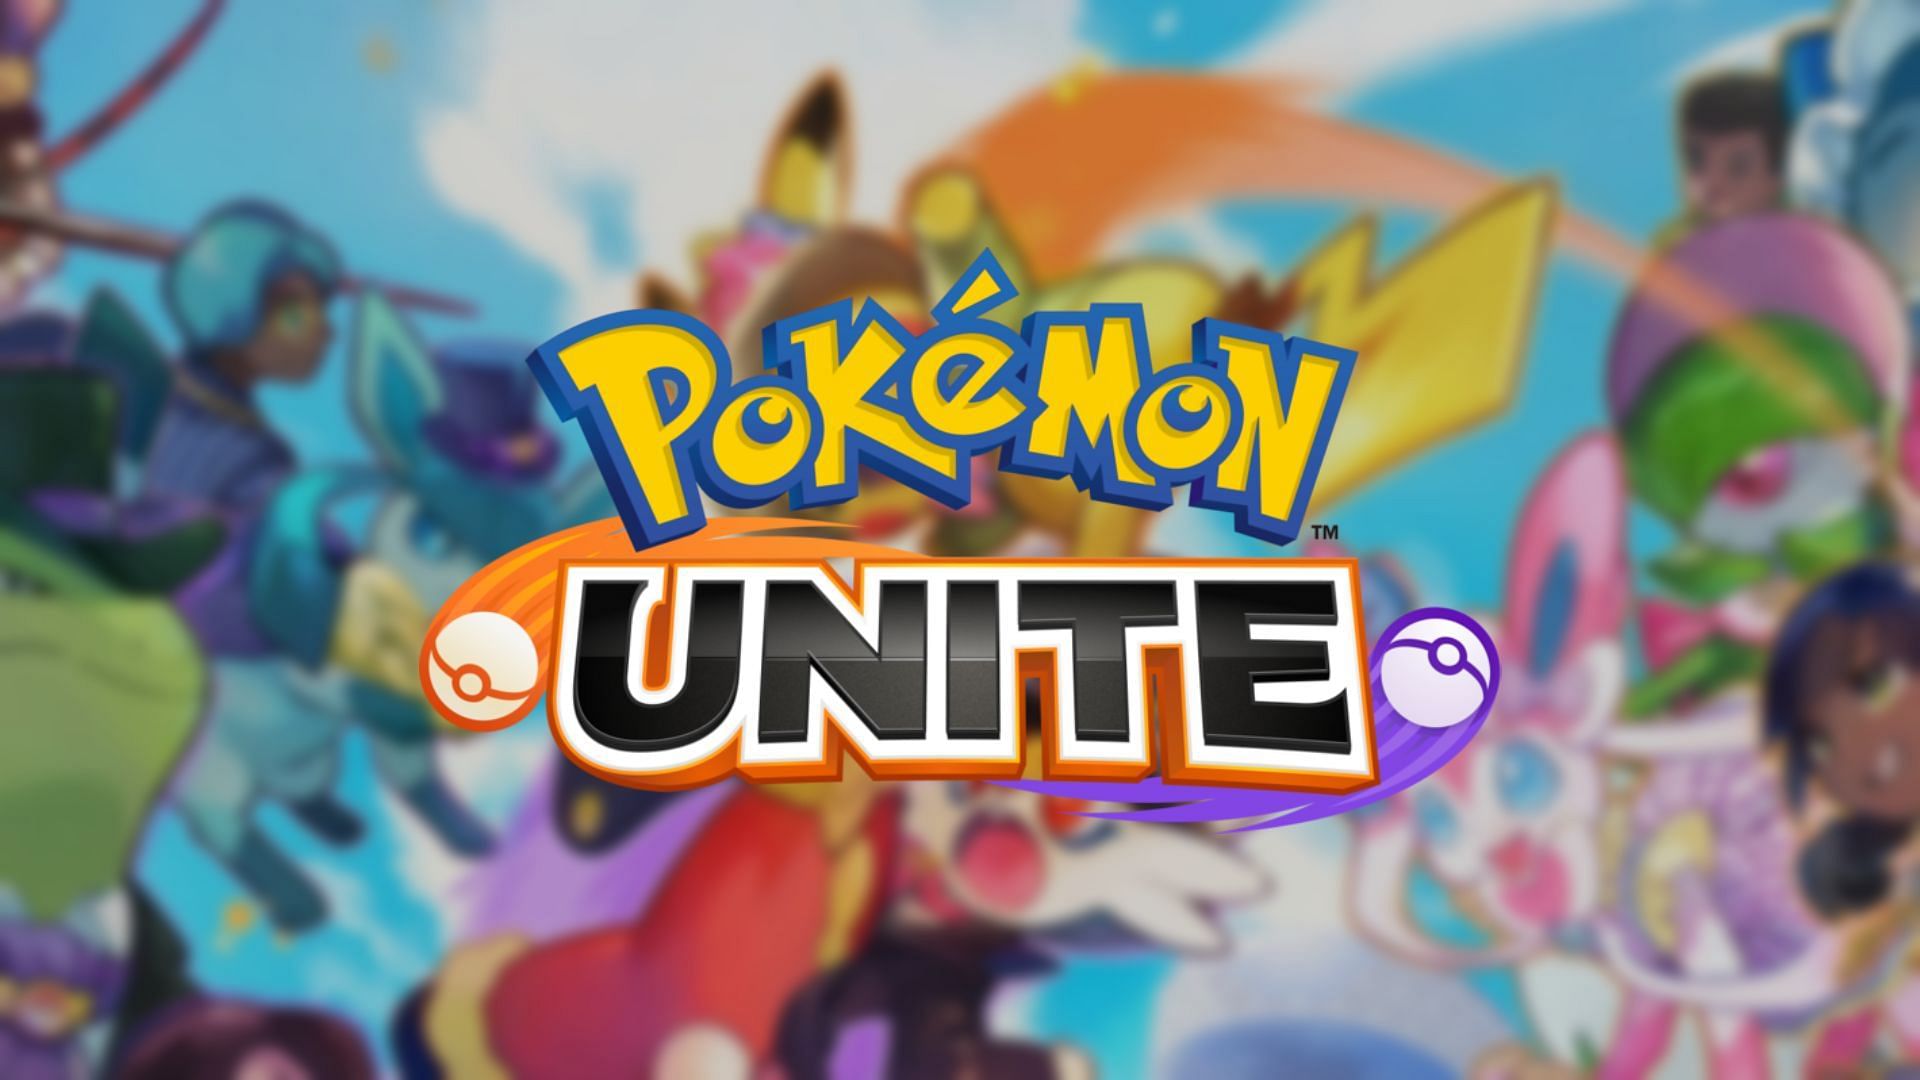 Unite download the last version for mac